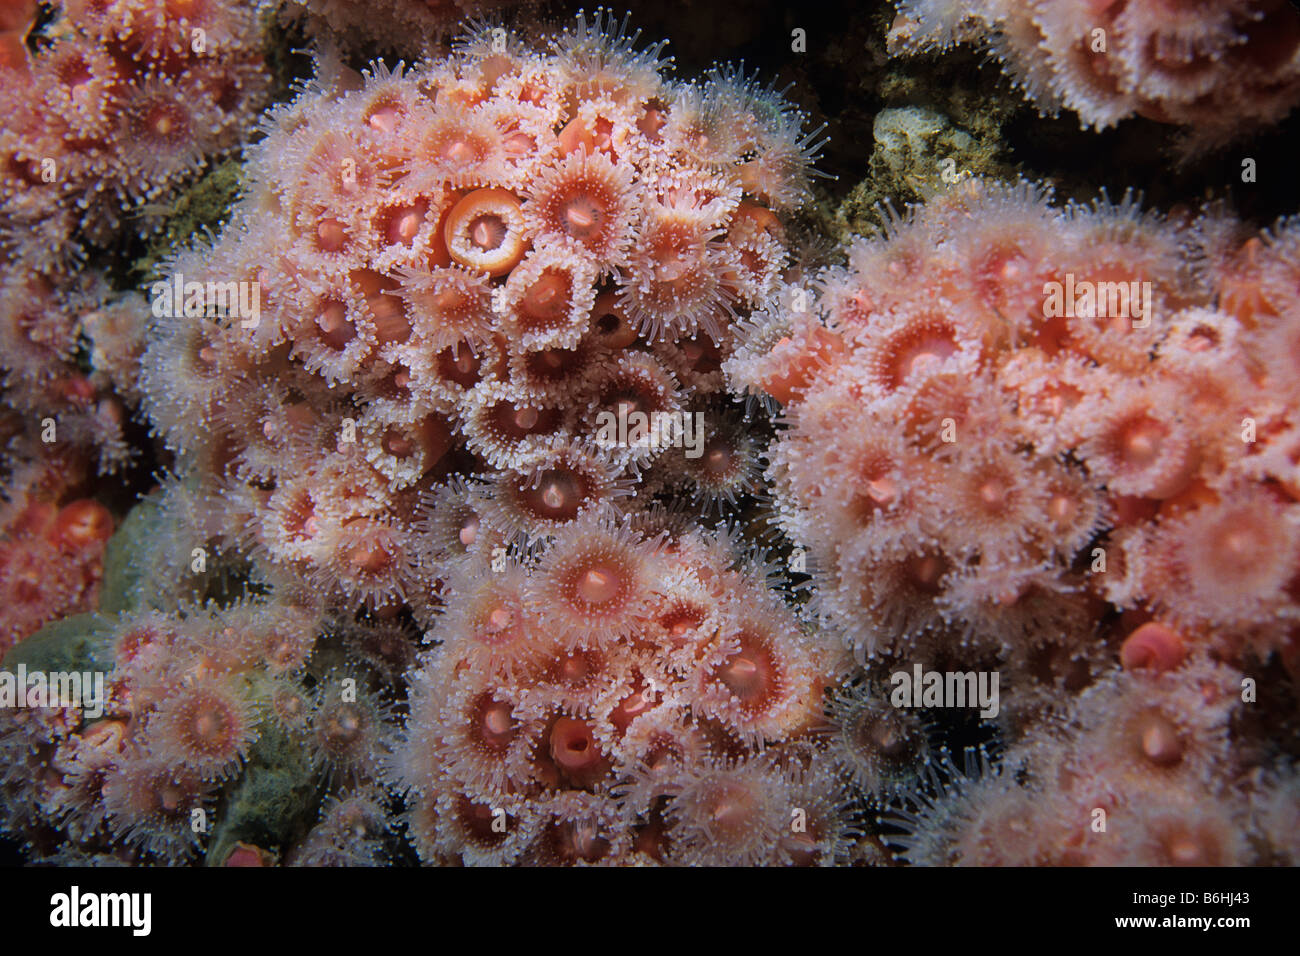 Kolonie von Strawberry Anemone oder Club-bestückte Anemone (Corynactis Californica) auf künstliches Riff, Kalifornien, USA. Stockfoto